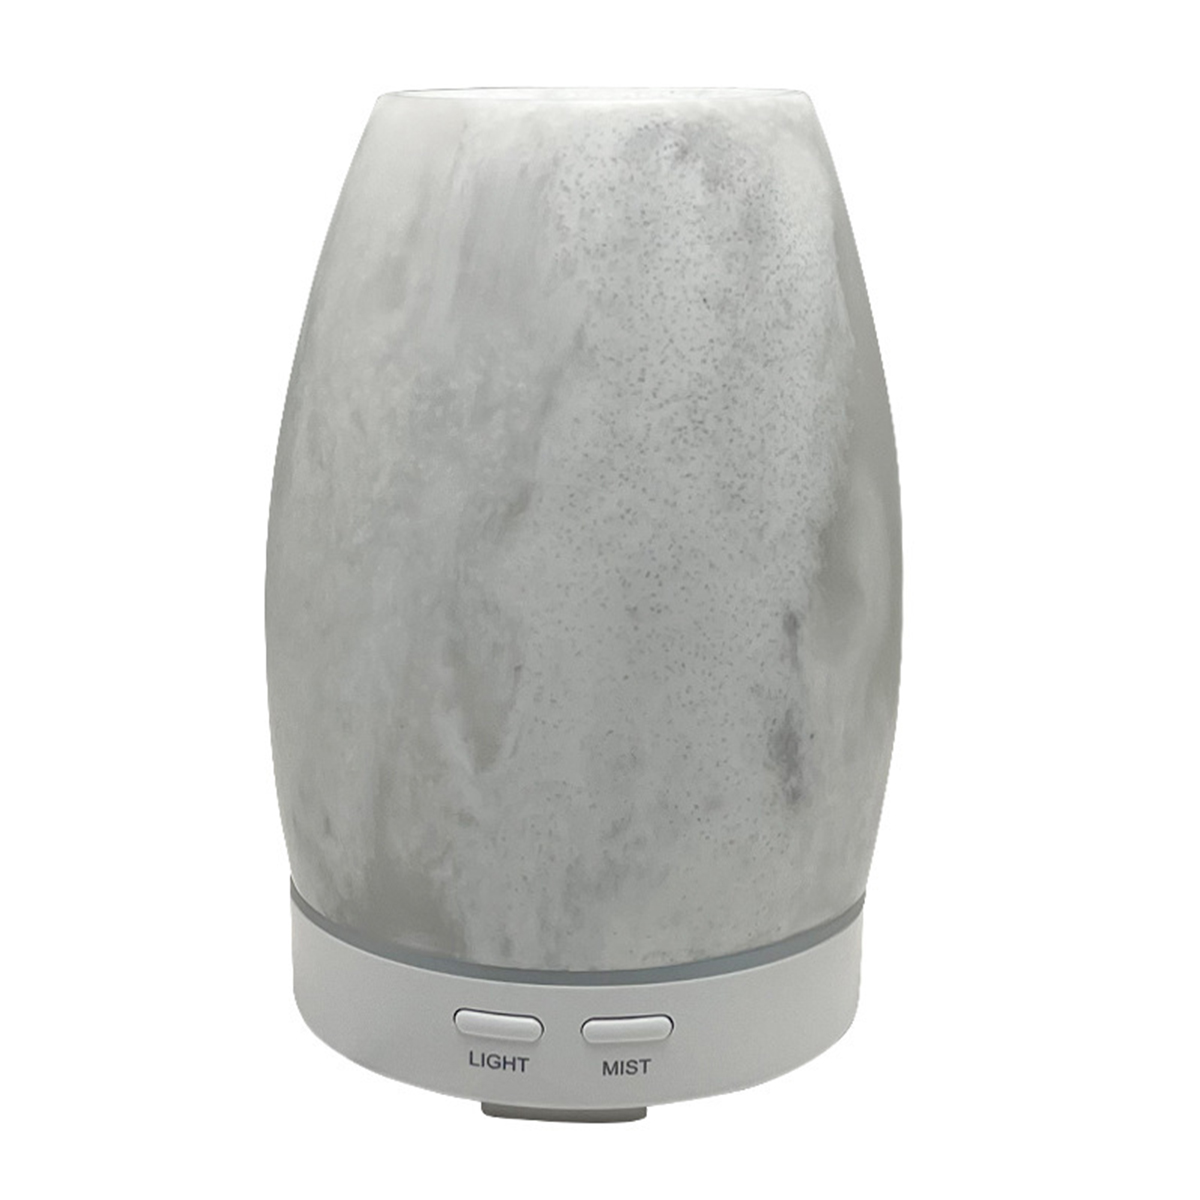 SHAOKE Mini Ultraschall Luftbefeuchter Automatische Grau Aromatherapie Luftbefeuchter - Abschaltung 10 (Raumgröße: ,Gold m²) - 300ml